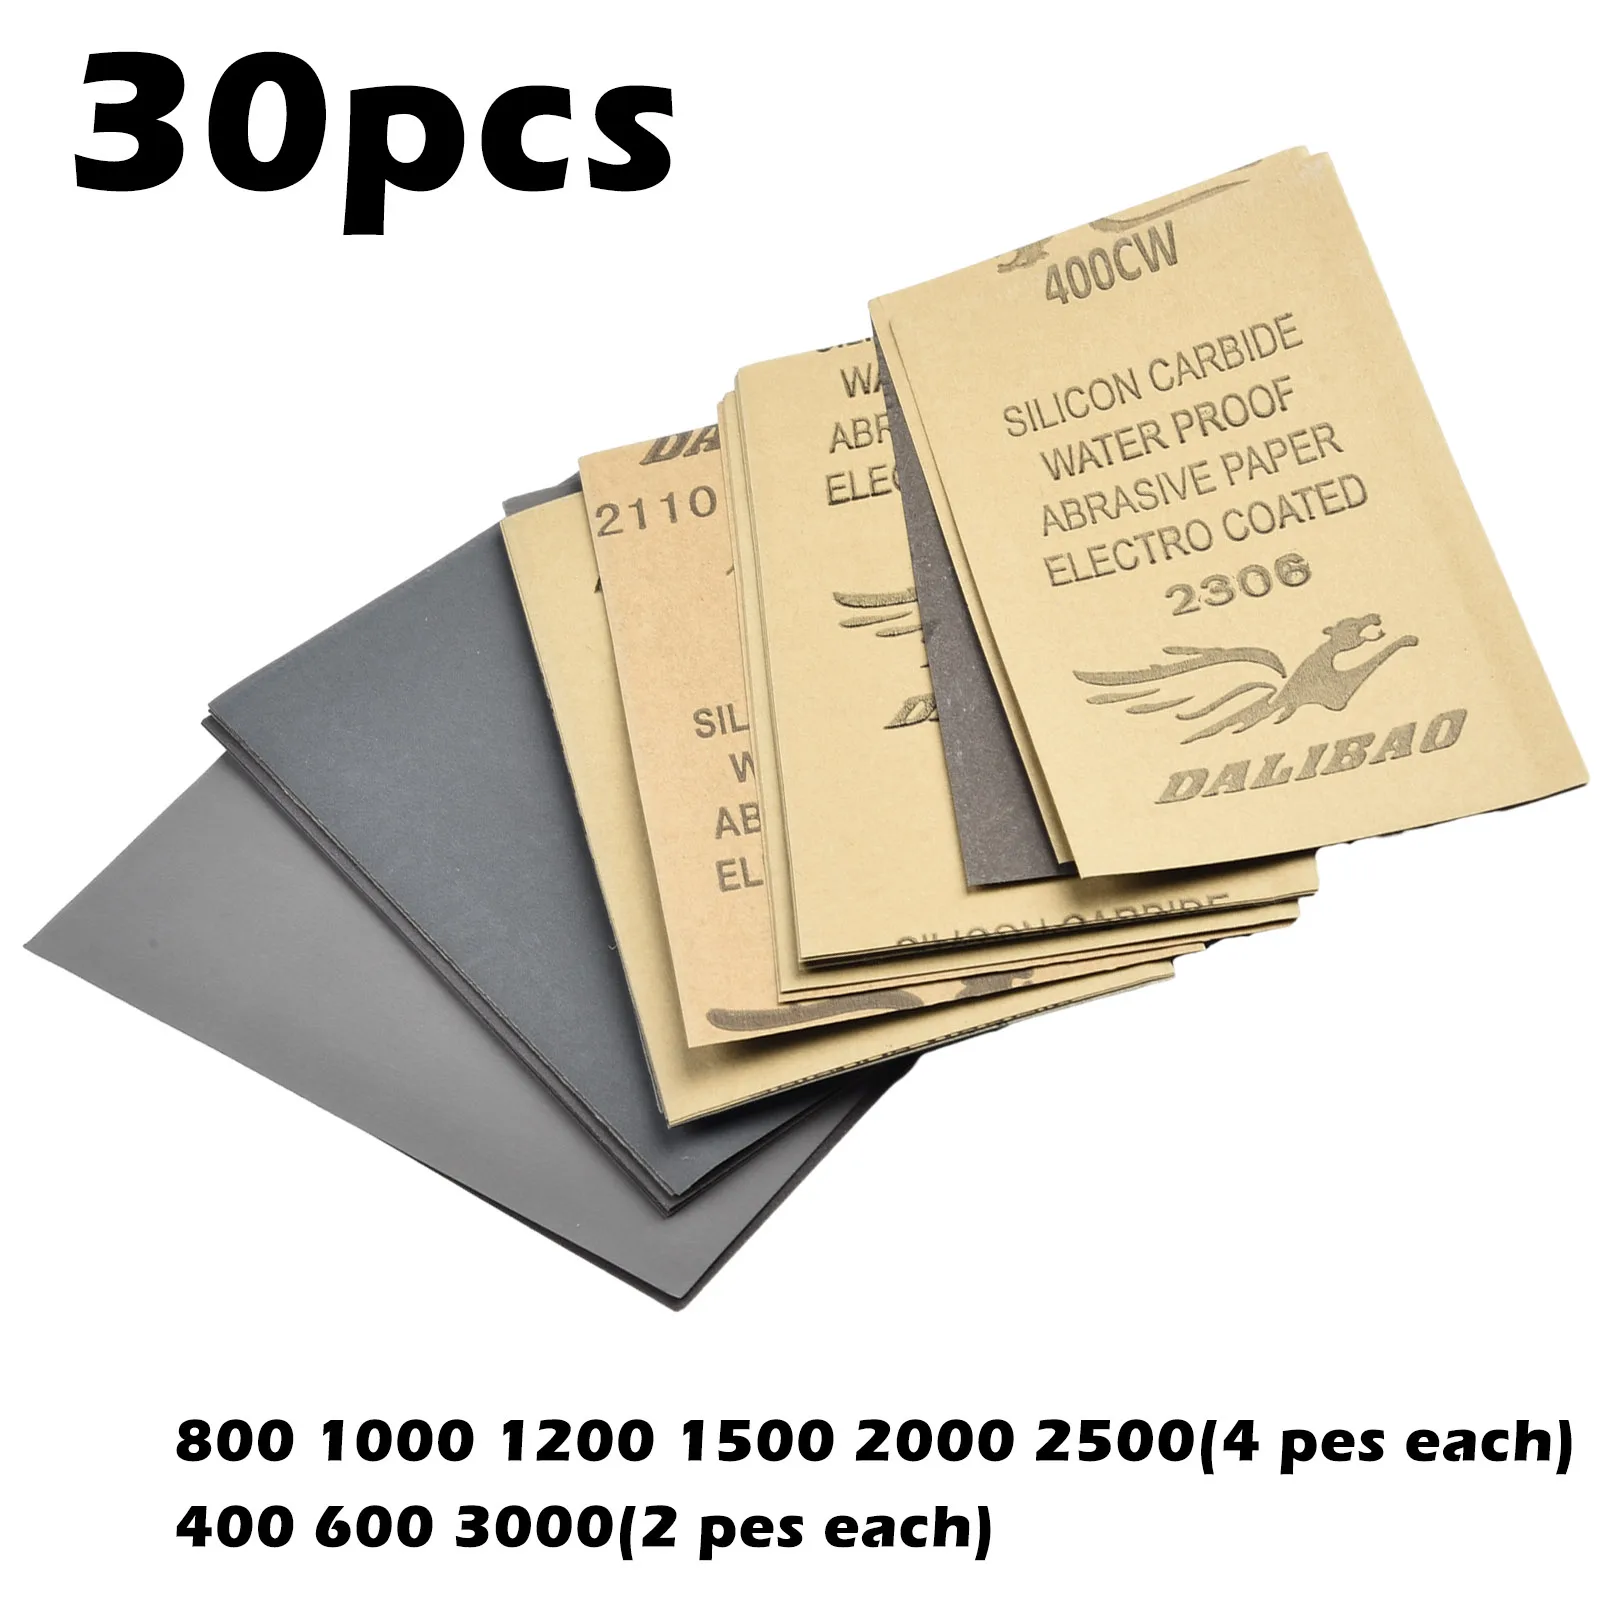 

30pcs Wet Dry Sandpaper 400 600 3000 800 1000 1200 1500 2500 Grit Sandpaper Wet Sanding Paper Abrasive Tools